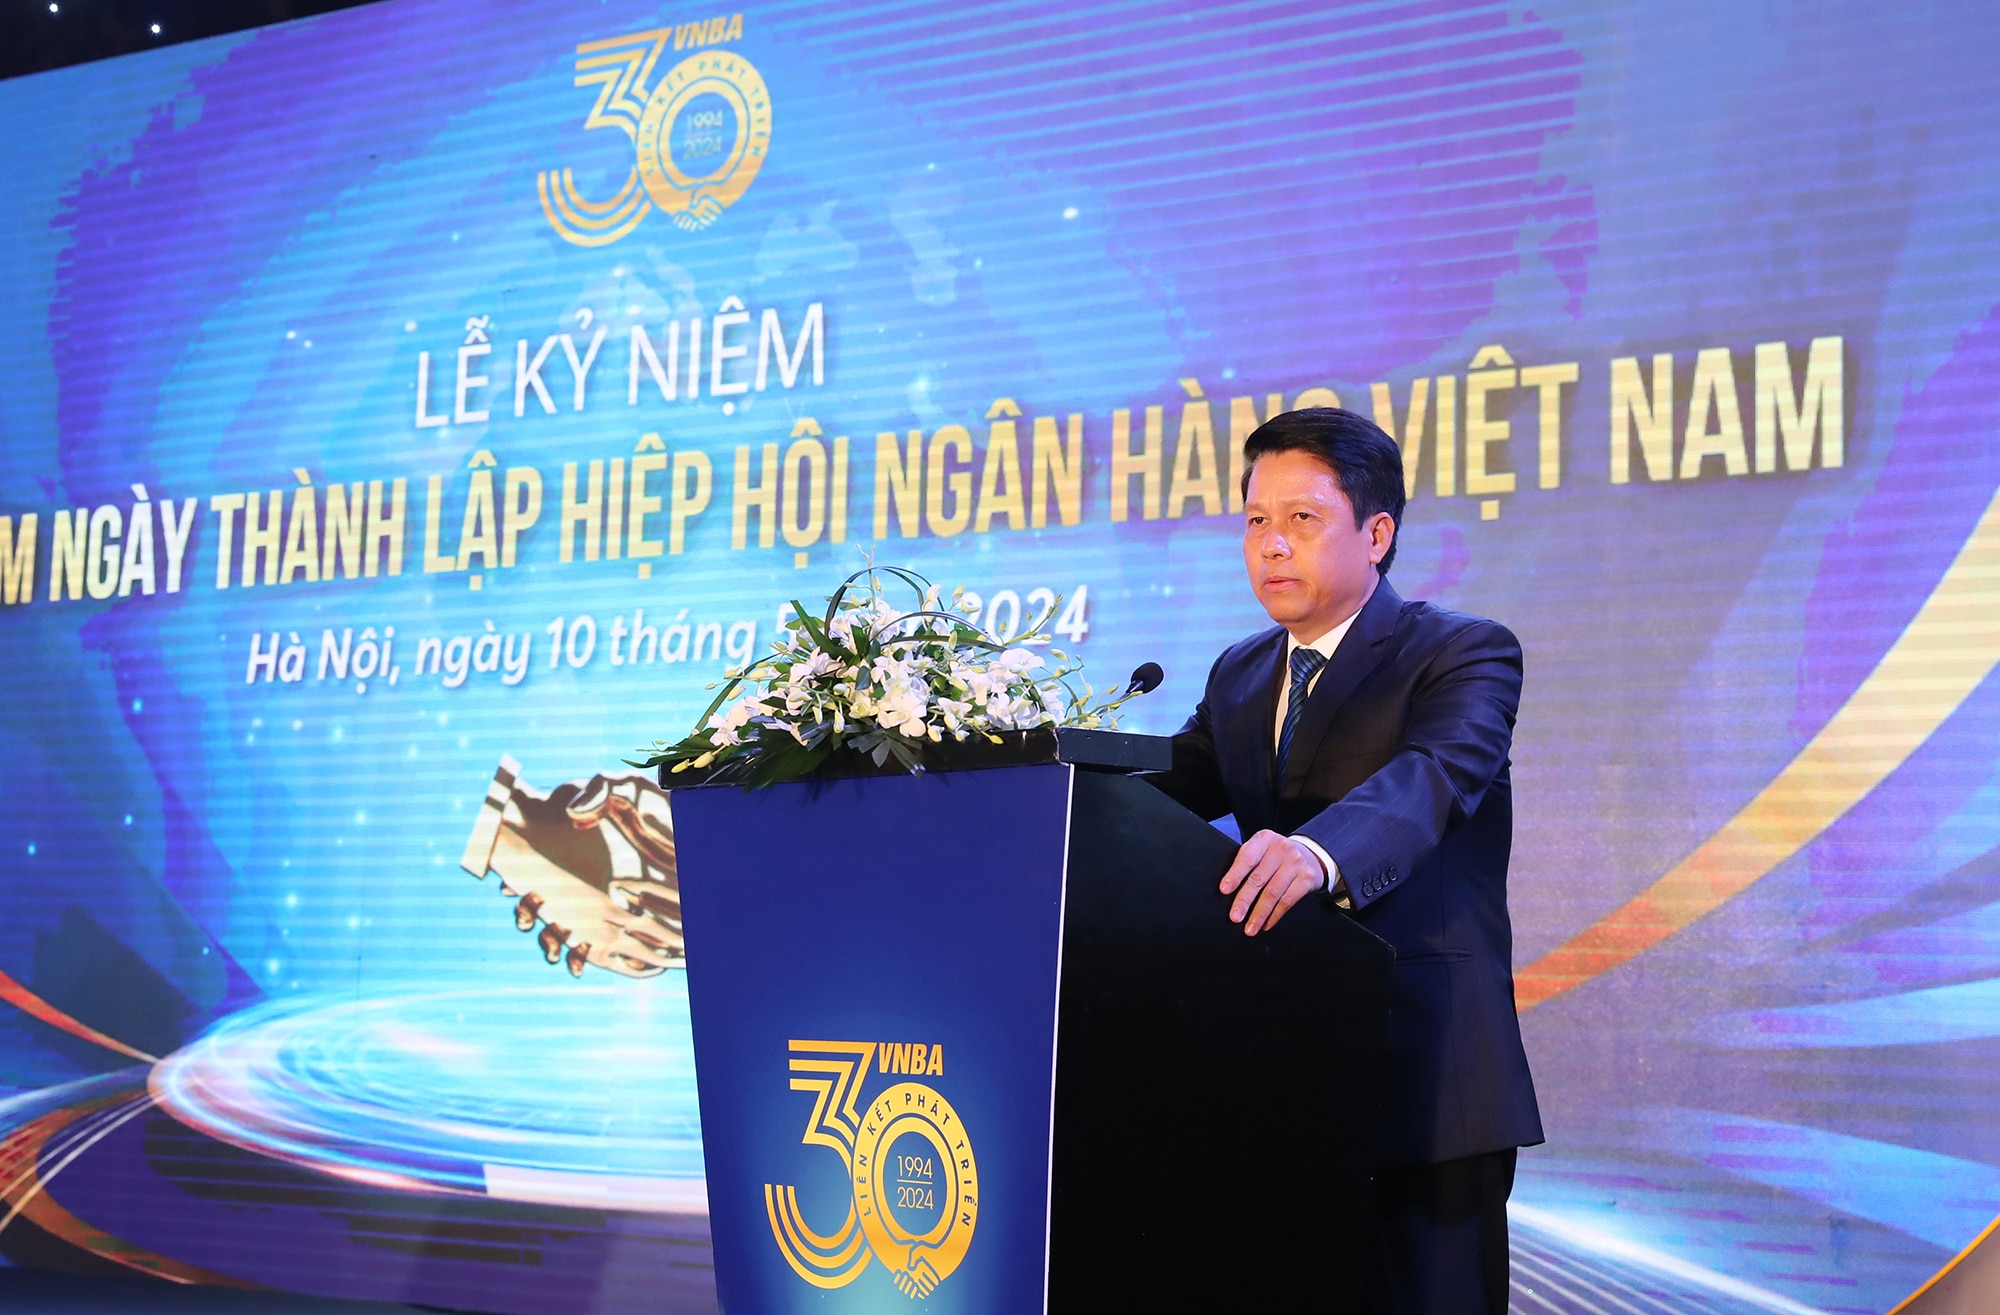 Hiệp hội Ngân hàng Việt Nam đóng góp quan trọng cho phát triển ngành ngân hàng- Ảnh 1.